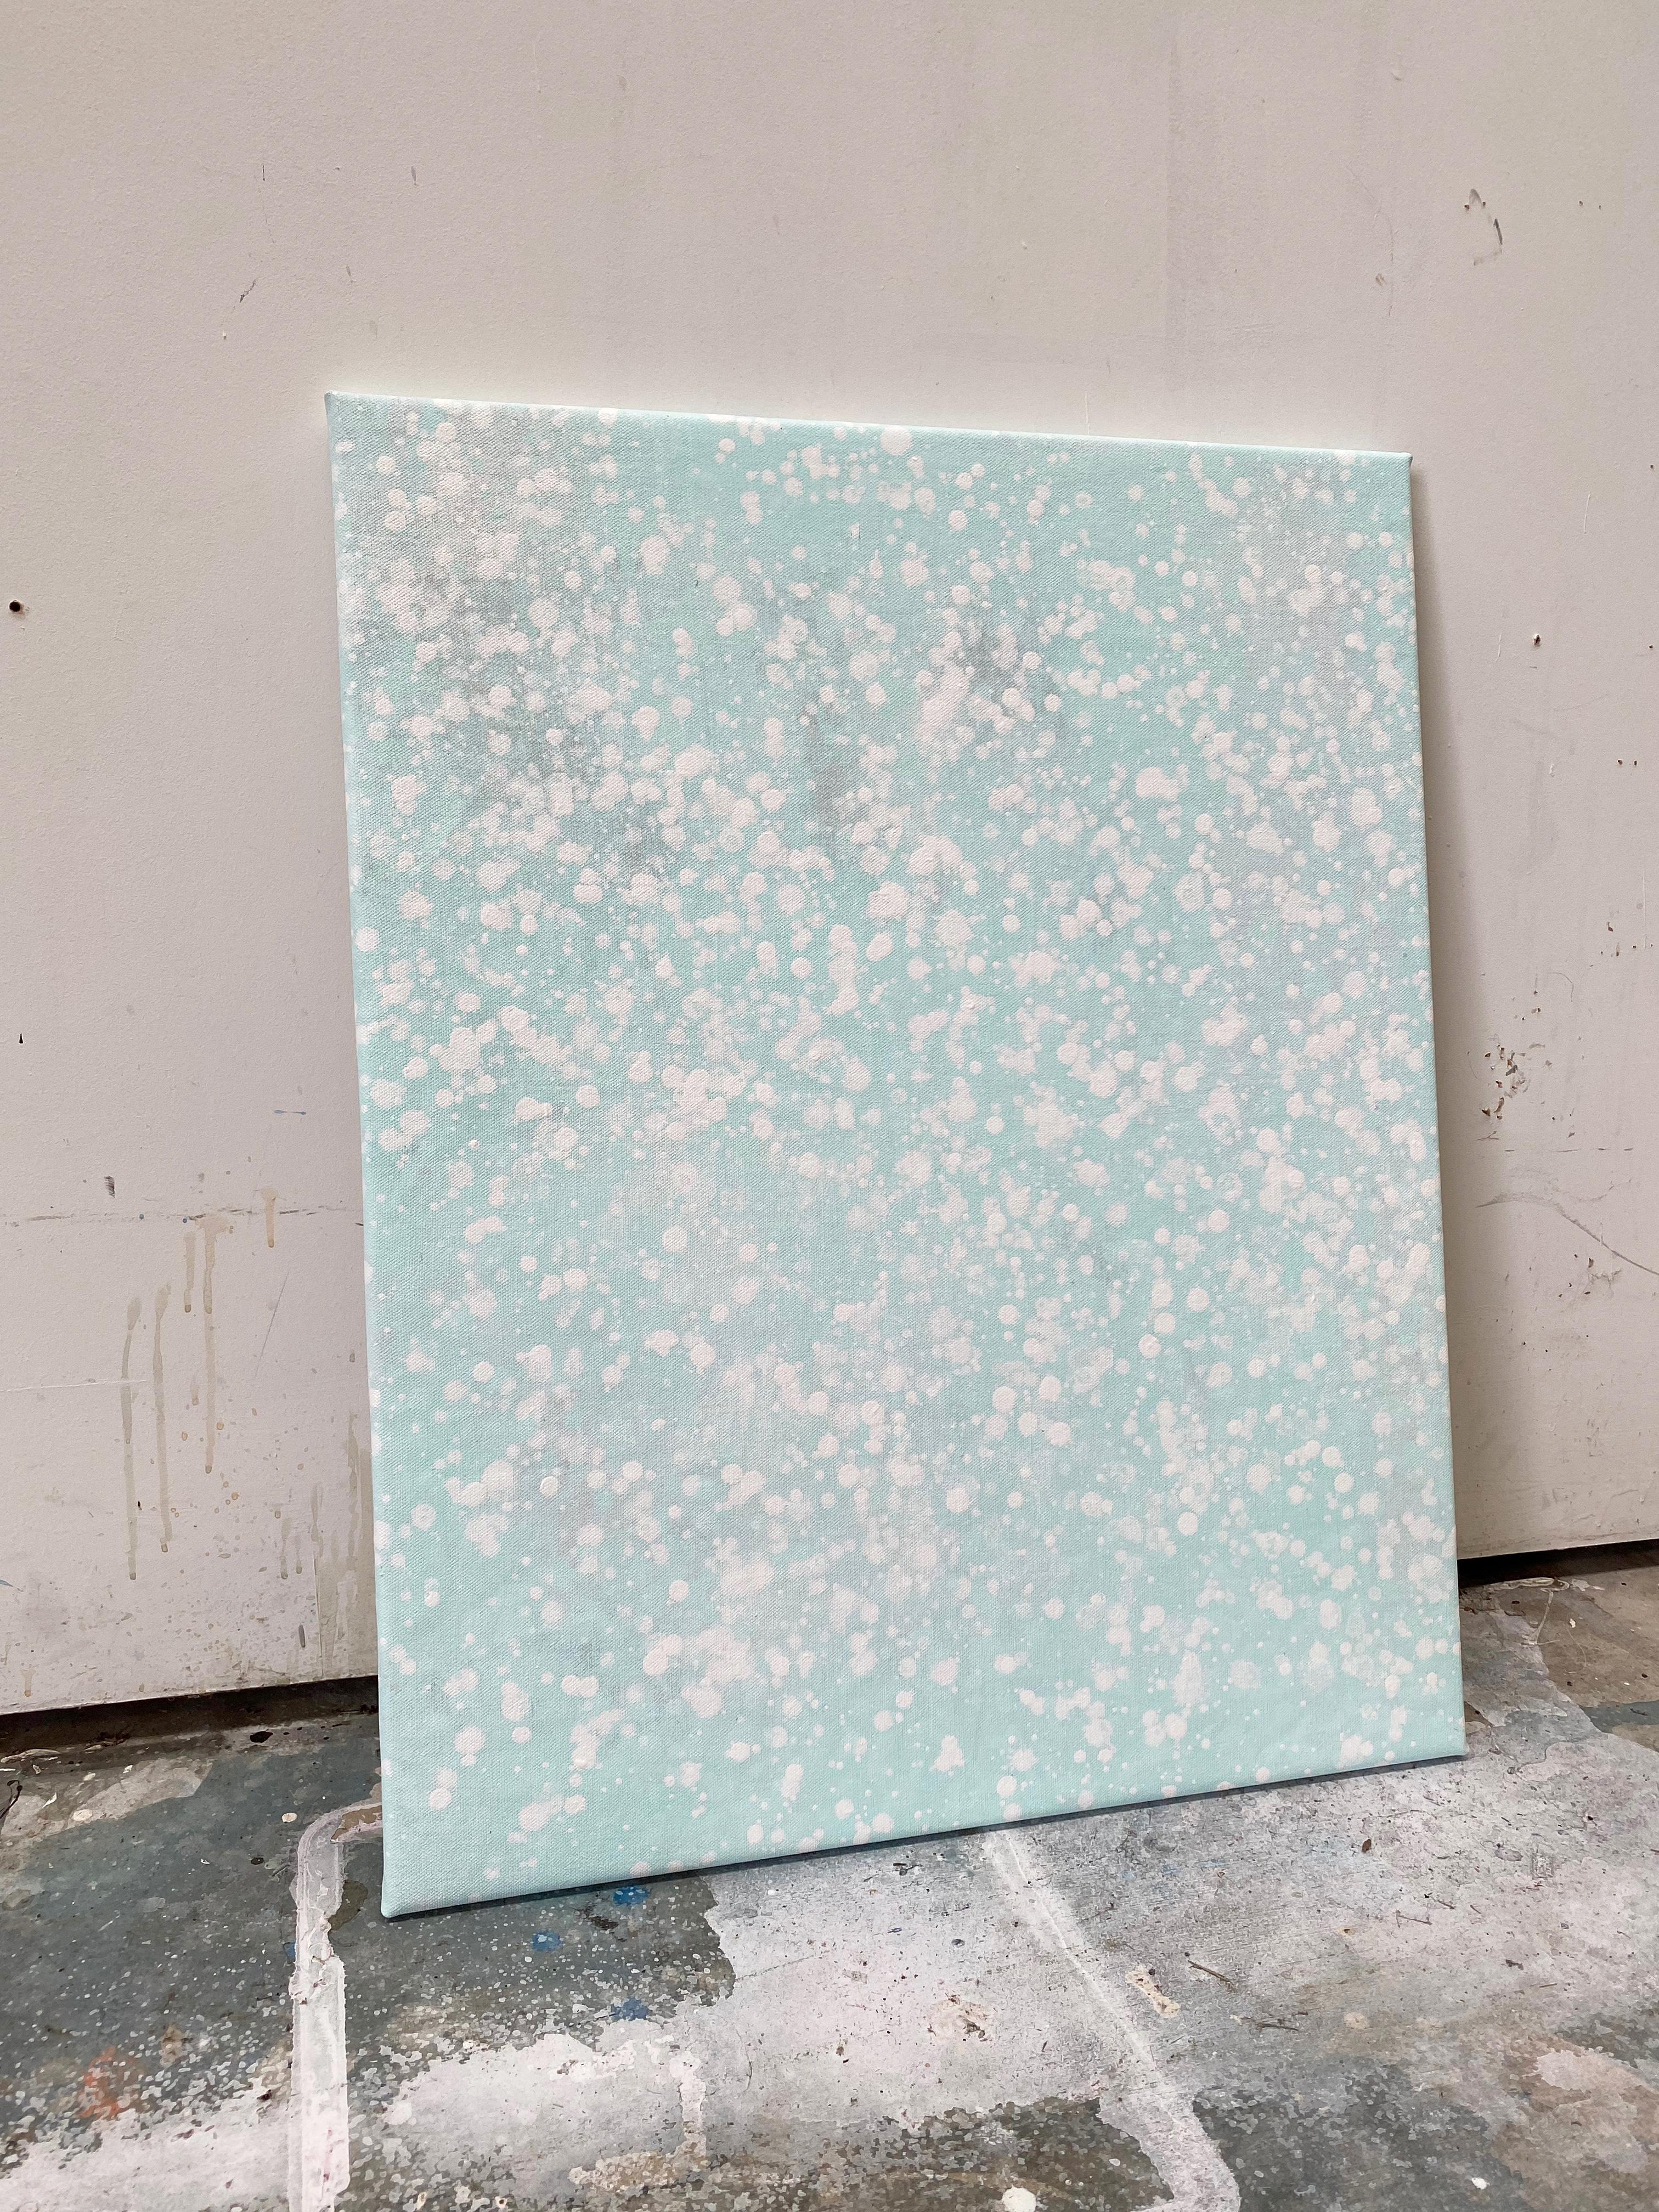 Its snowing pastell mintgrüner Punkt abstraktes expressionistisches Gemälde auf Leinen (Grau), Abstract Painting, von Kathleen Rhee